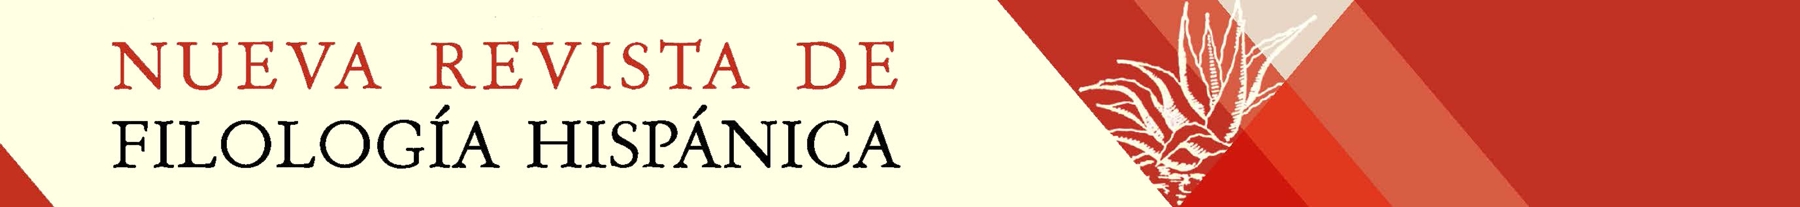 Banner Nueva Revista de Filología Hispánica